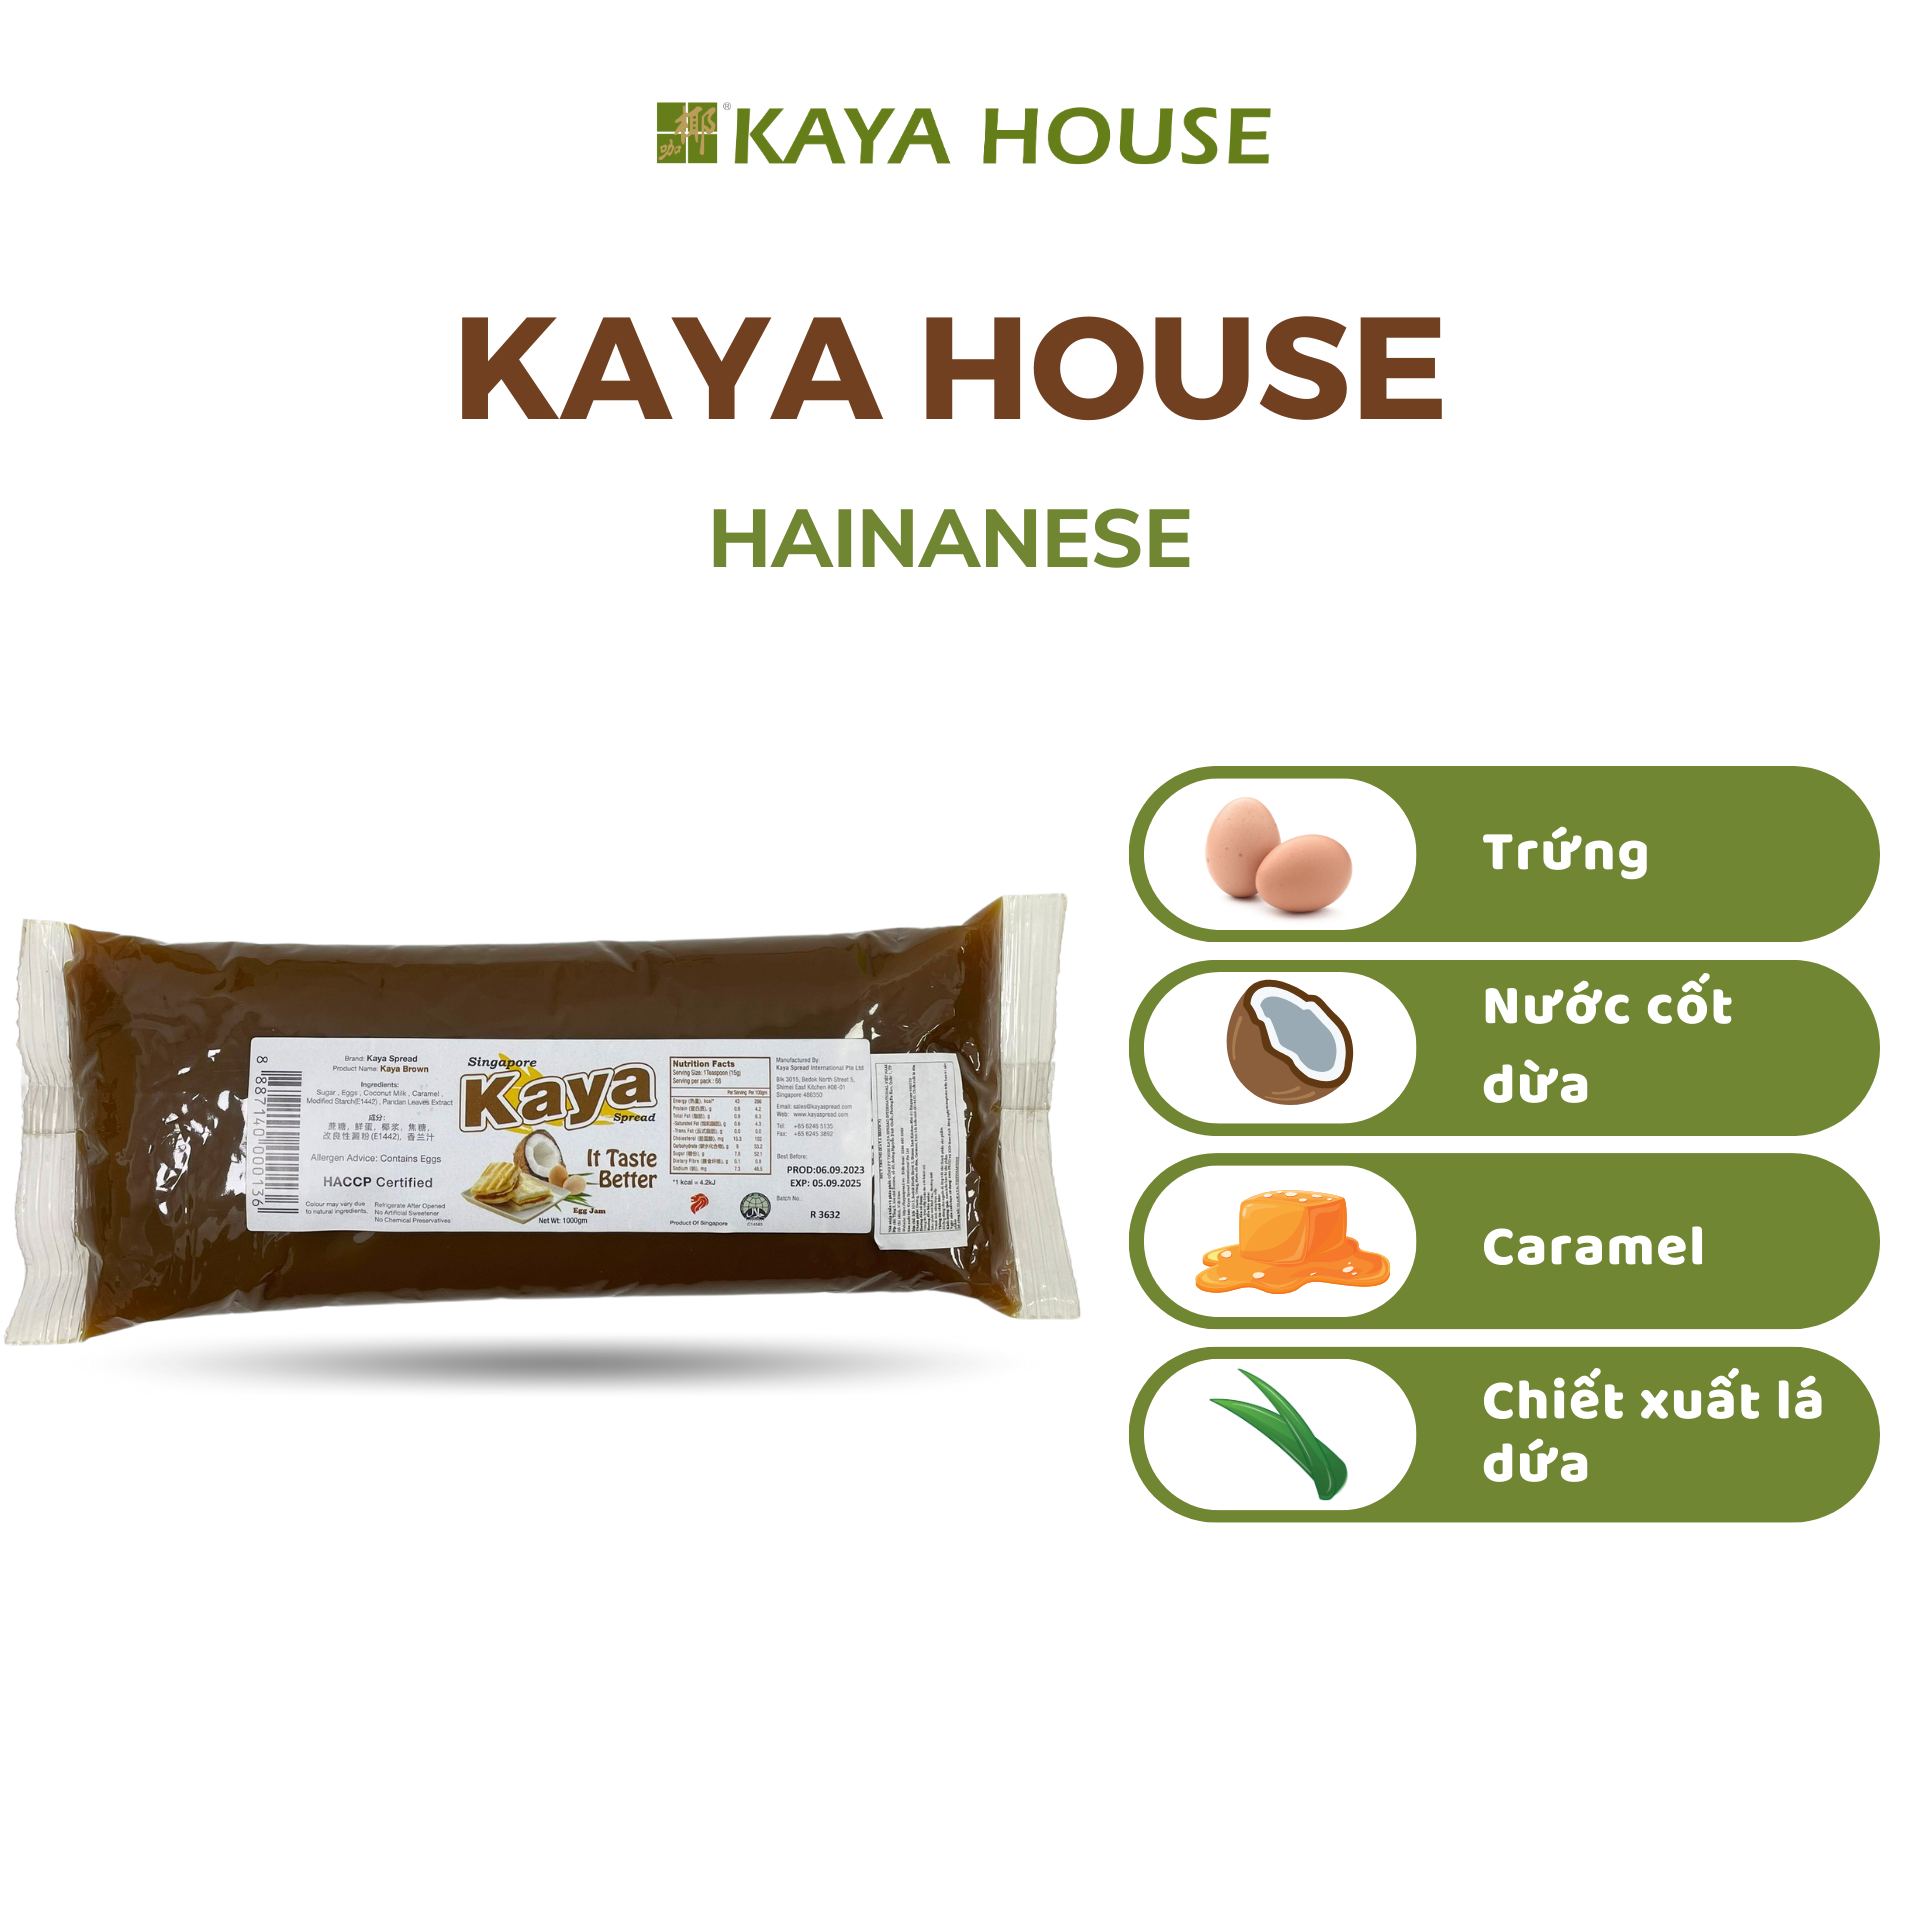 Mứt Kaya Singapore Spread Hainanese túi 1000G - Ăn kèm với Sandwich, làm nguyên liệu nấu ăn